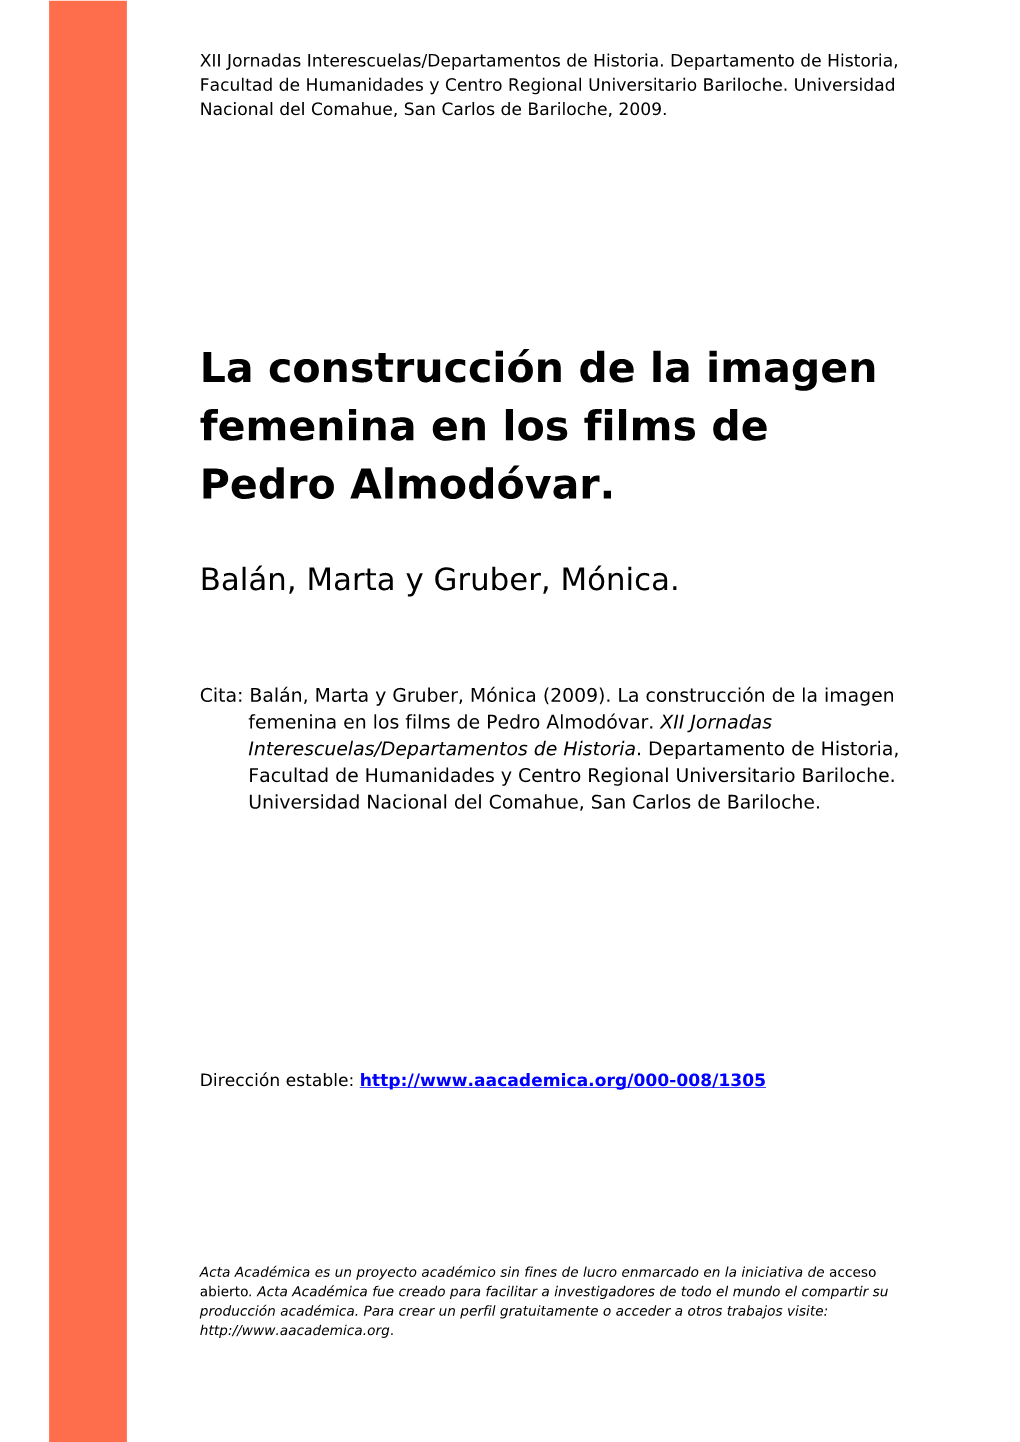 La Construcción De La Imagen Femenina En Los Films De Pedro Almodóvar